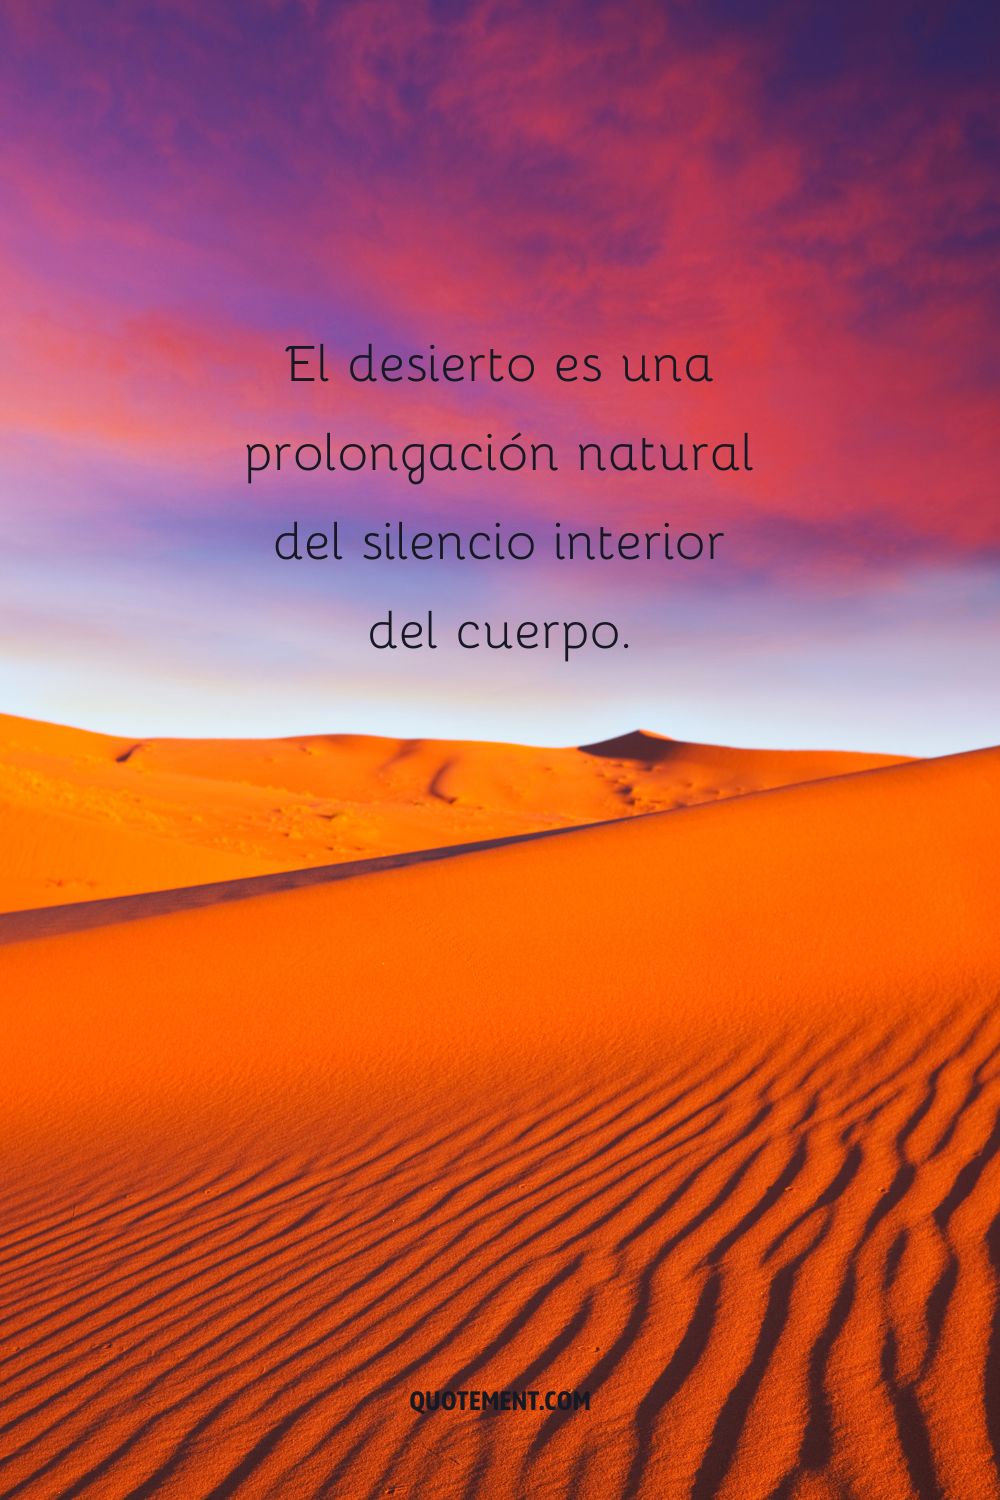 El desierto es una prolongación natural del silencio interior del cuerpo.